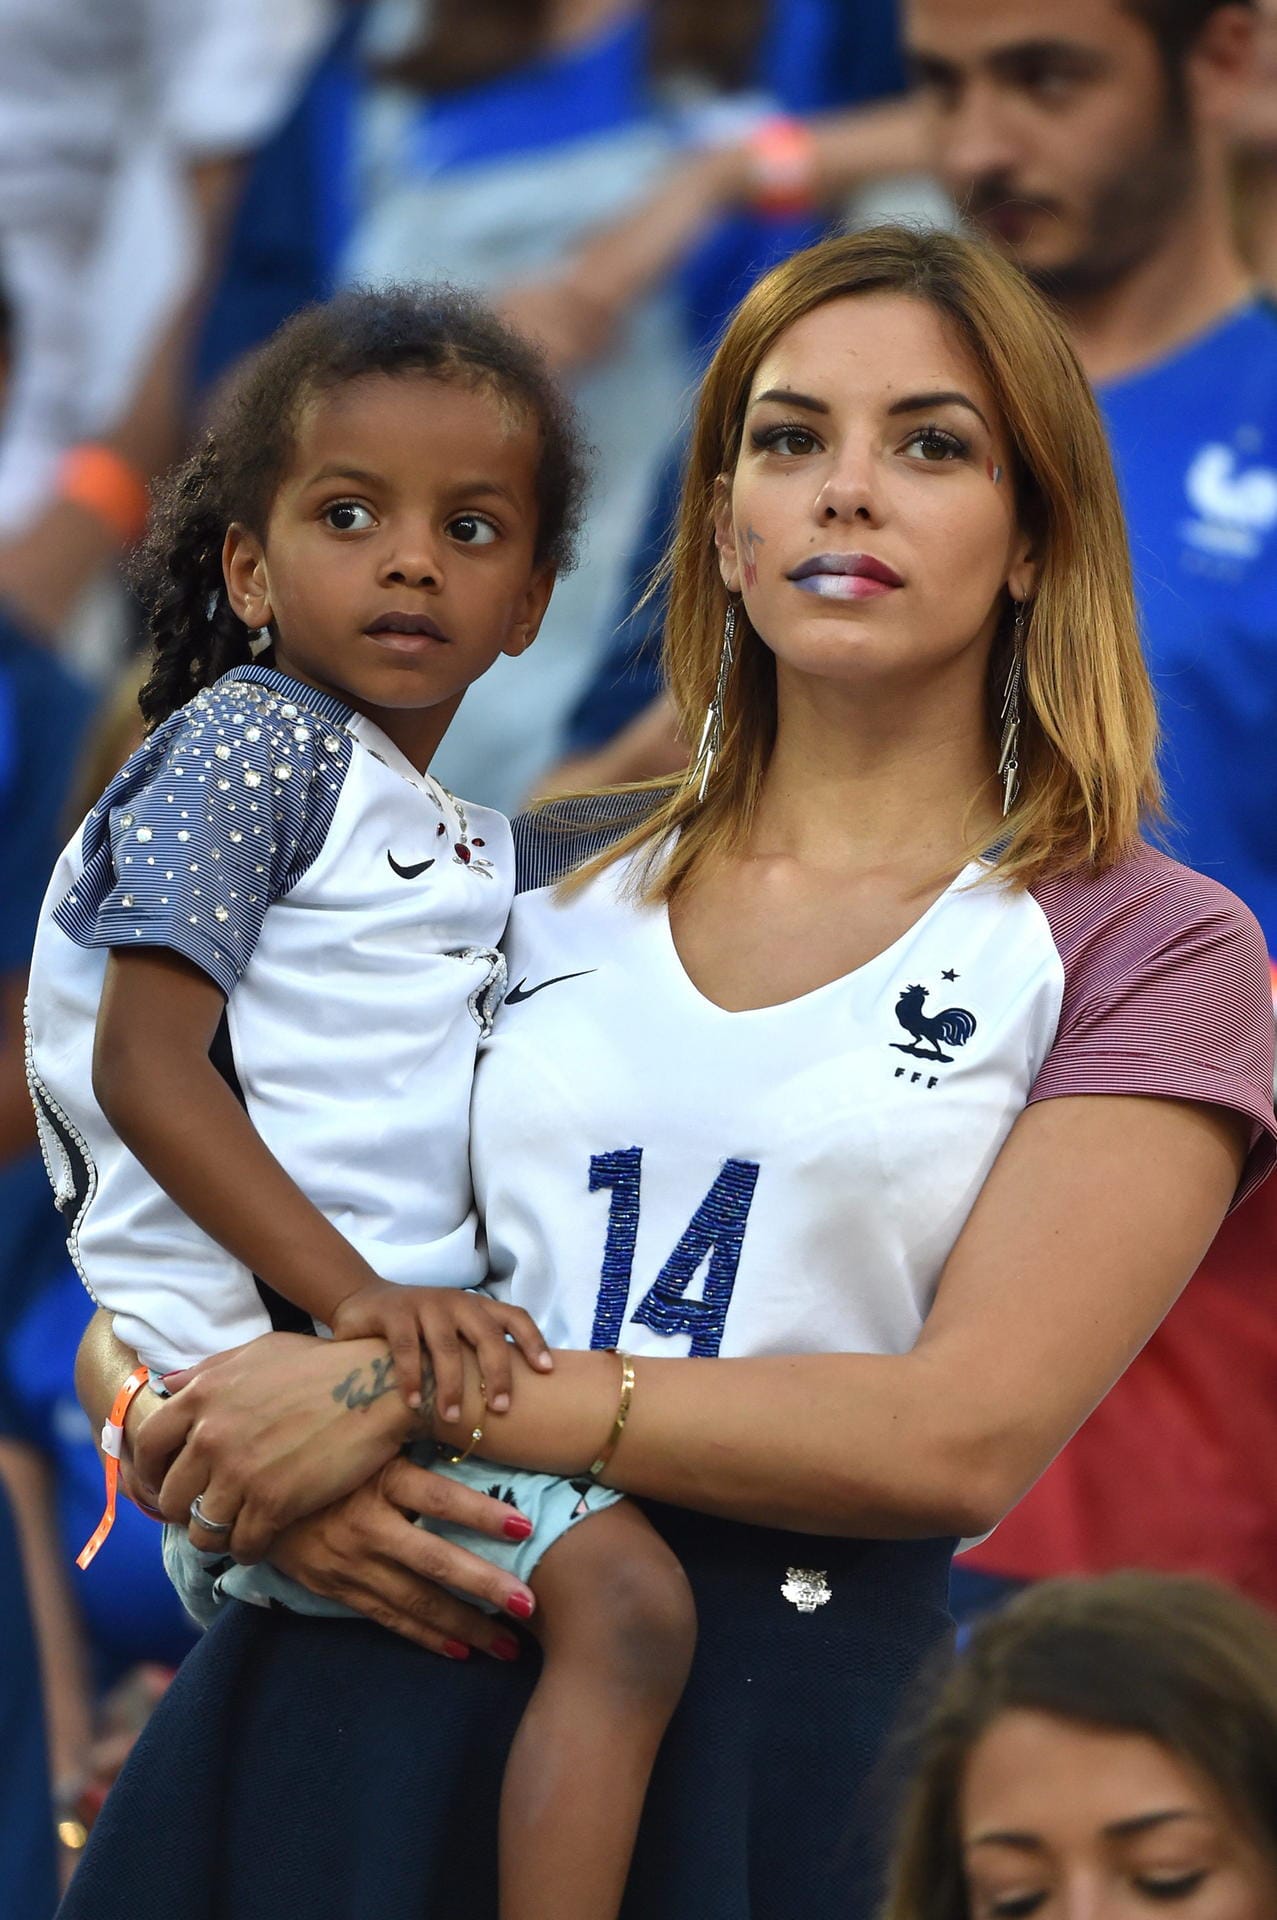 Mittelfeldspieler Blaise Matuidi ist schon seit Jugendtagen mit der Osteopathin Isabelle zusammen, geheiratet wird aber erst 2017. Das Paar hat drei Kinder, darunter die vierjährige Naëlle, die das Halbfinale mit ihrer Mutter im Stadion gucken durfte.